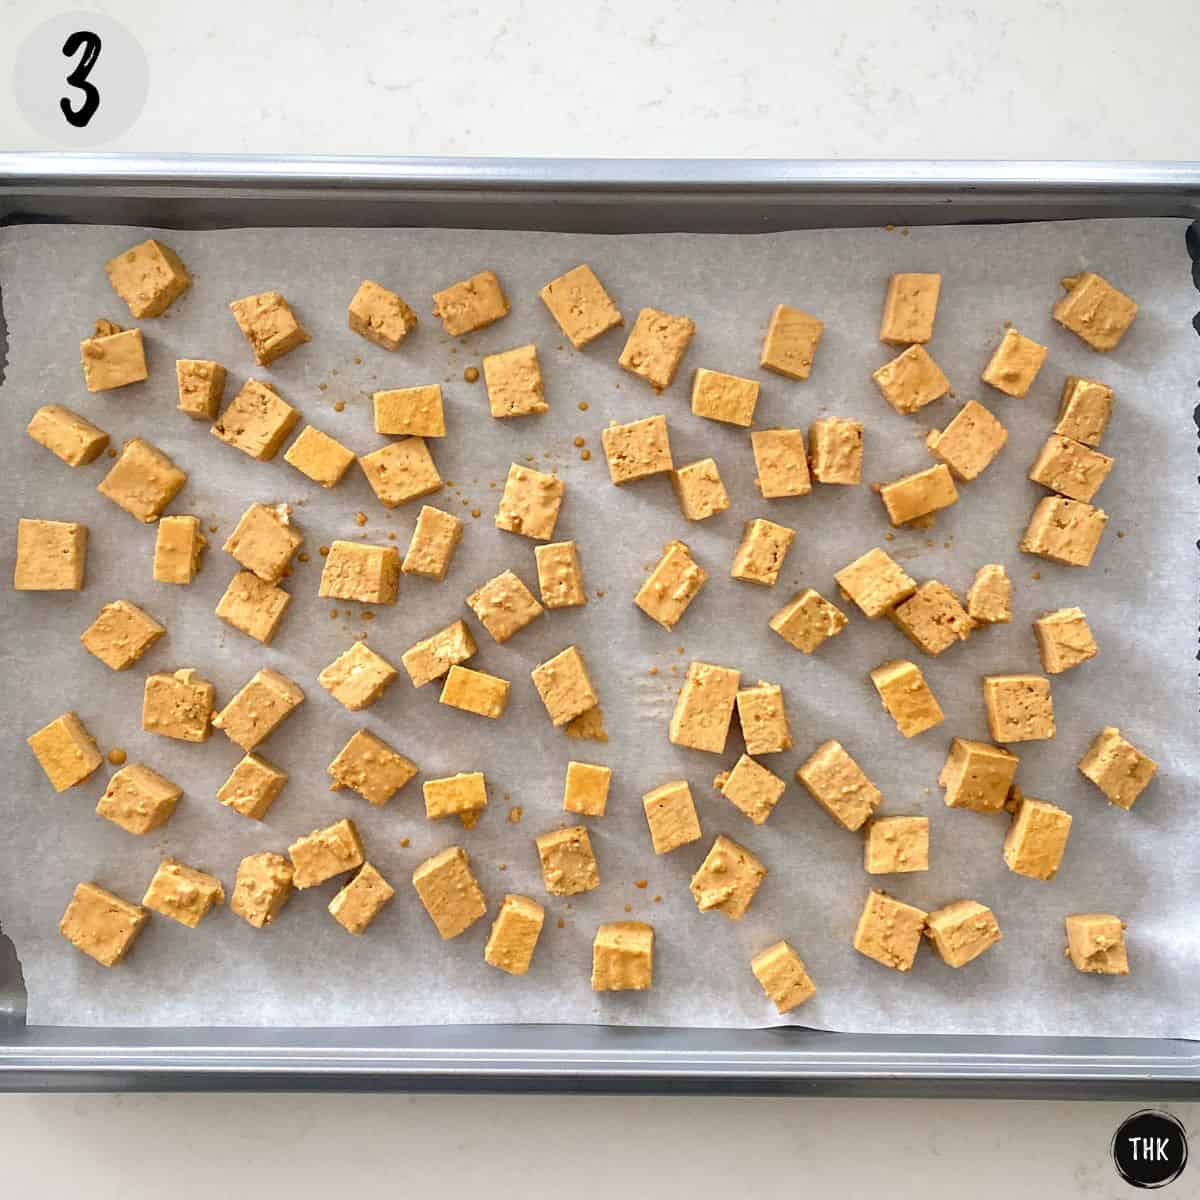 Tofu cubs on baking sheet.